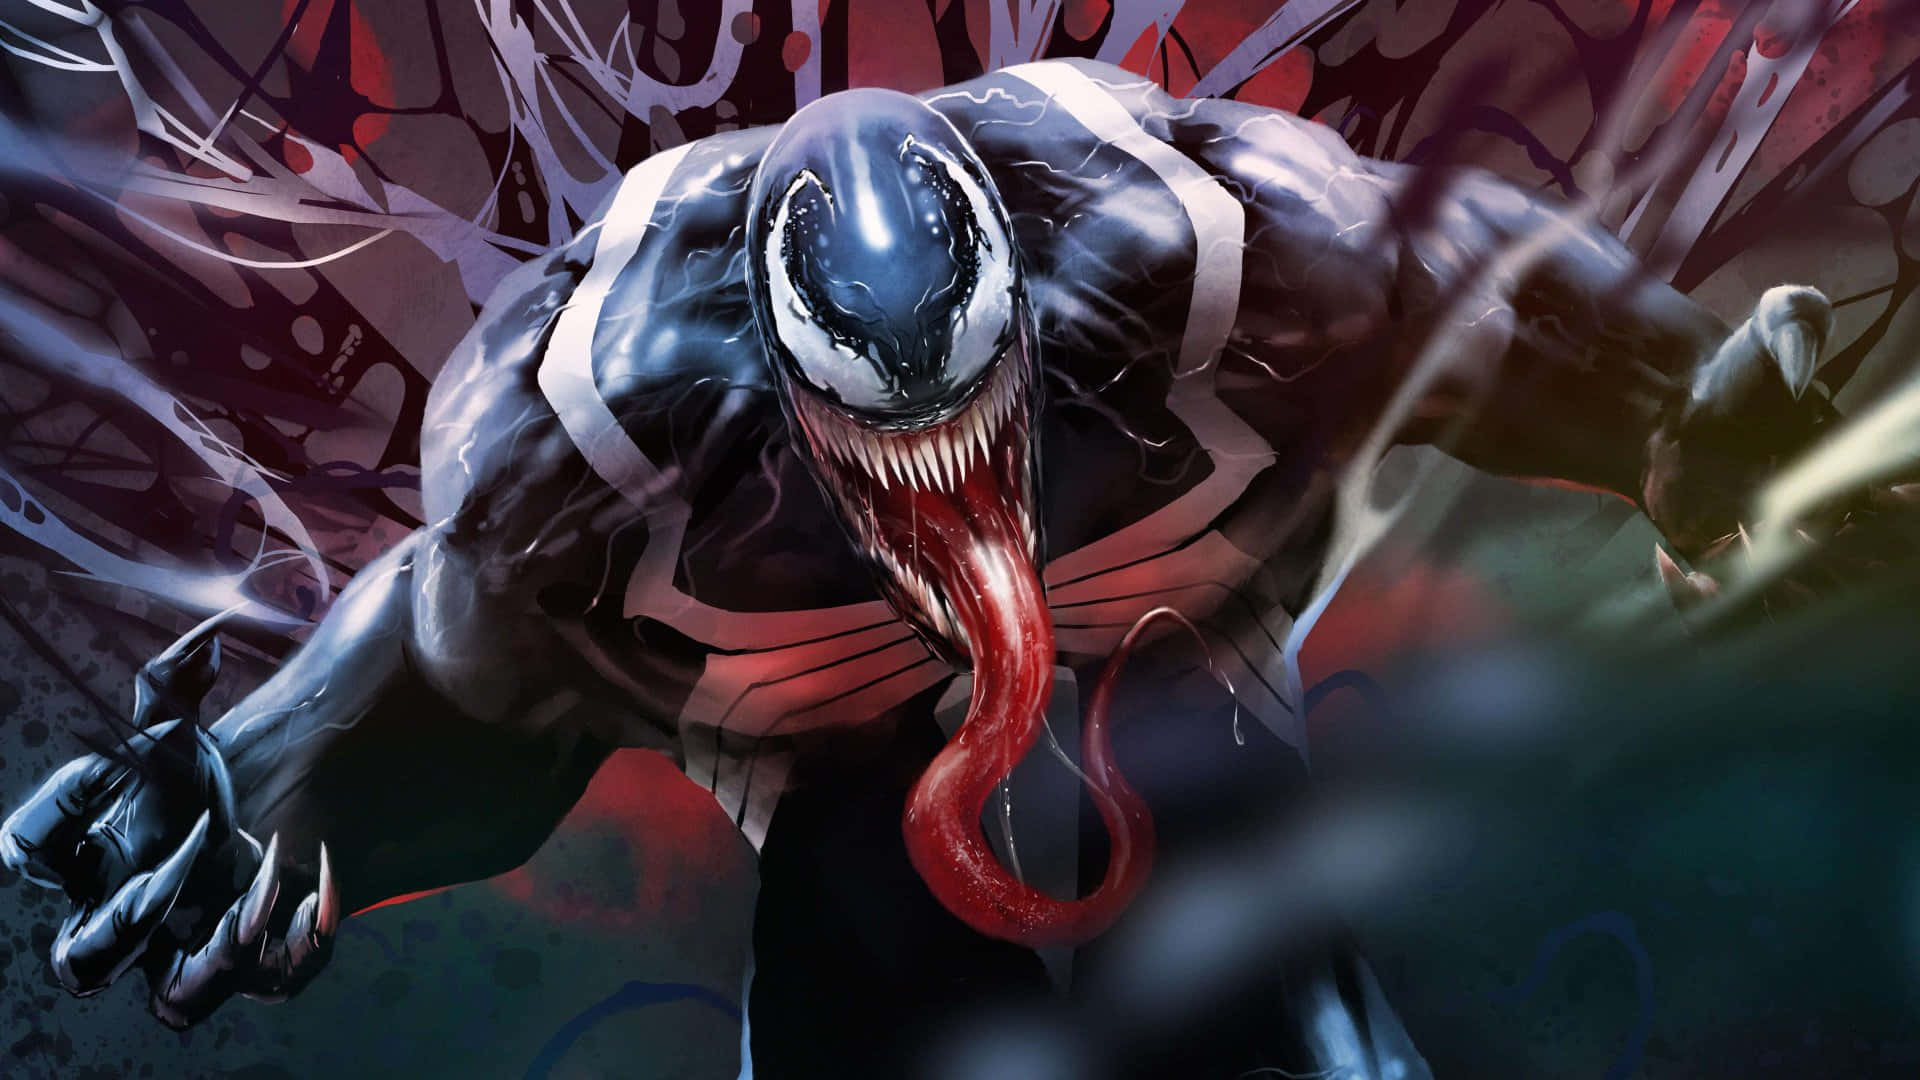 Efter måneder af indespærring frigives Venom endelig sin indre kraft.